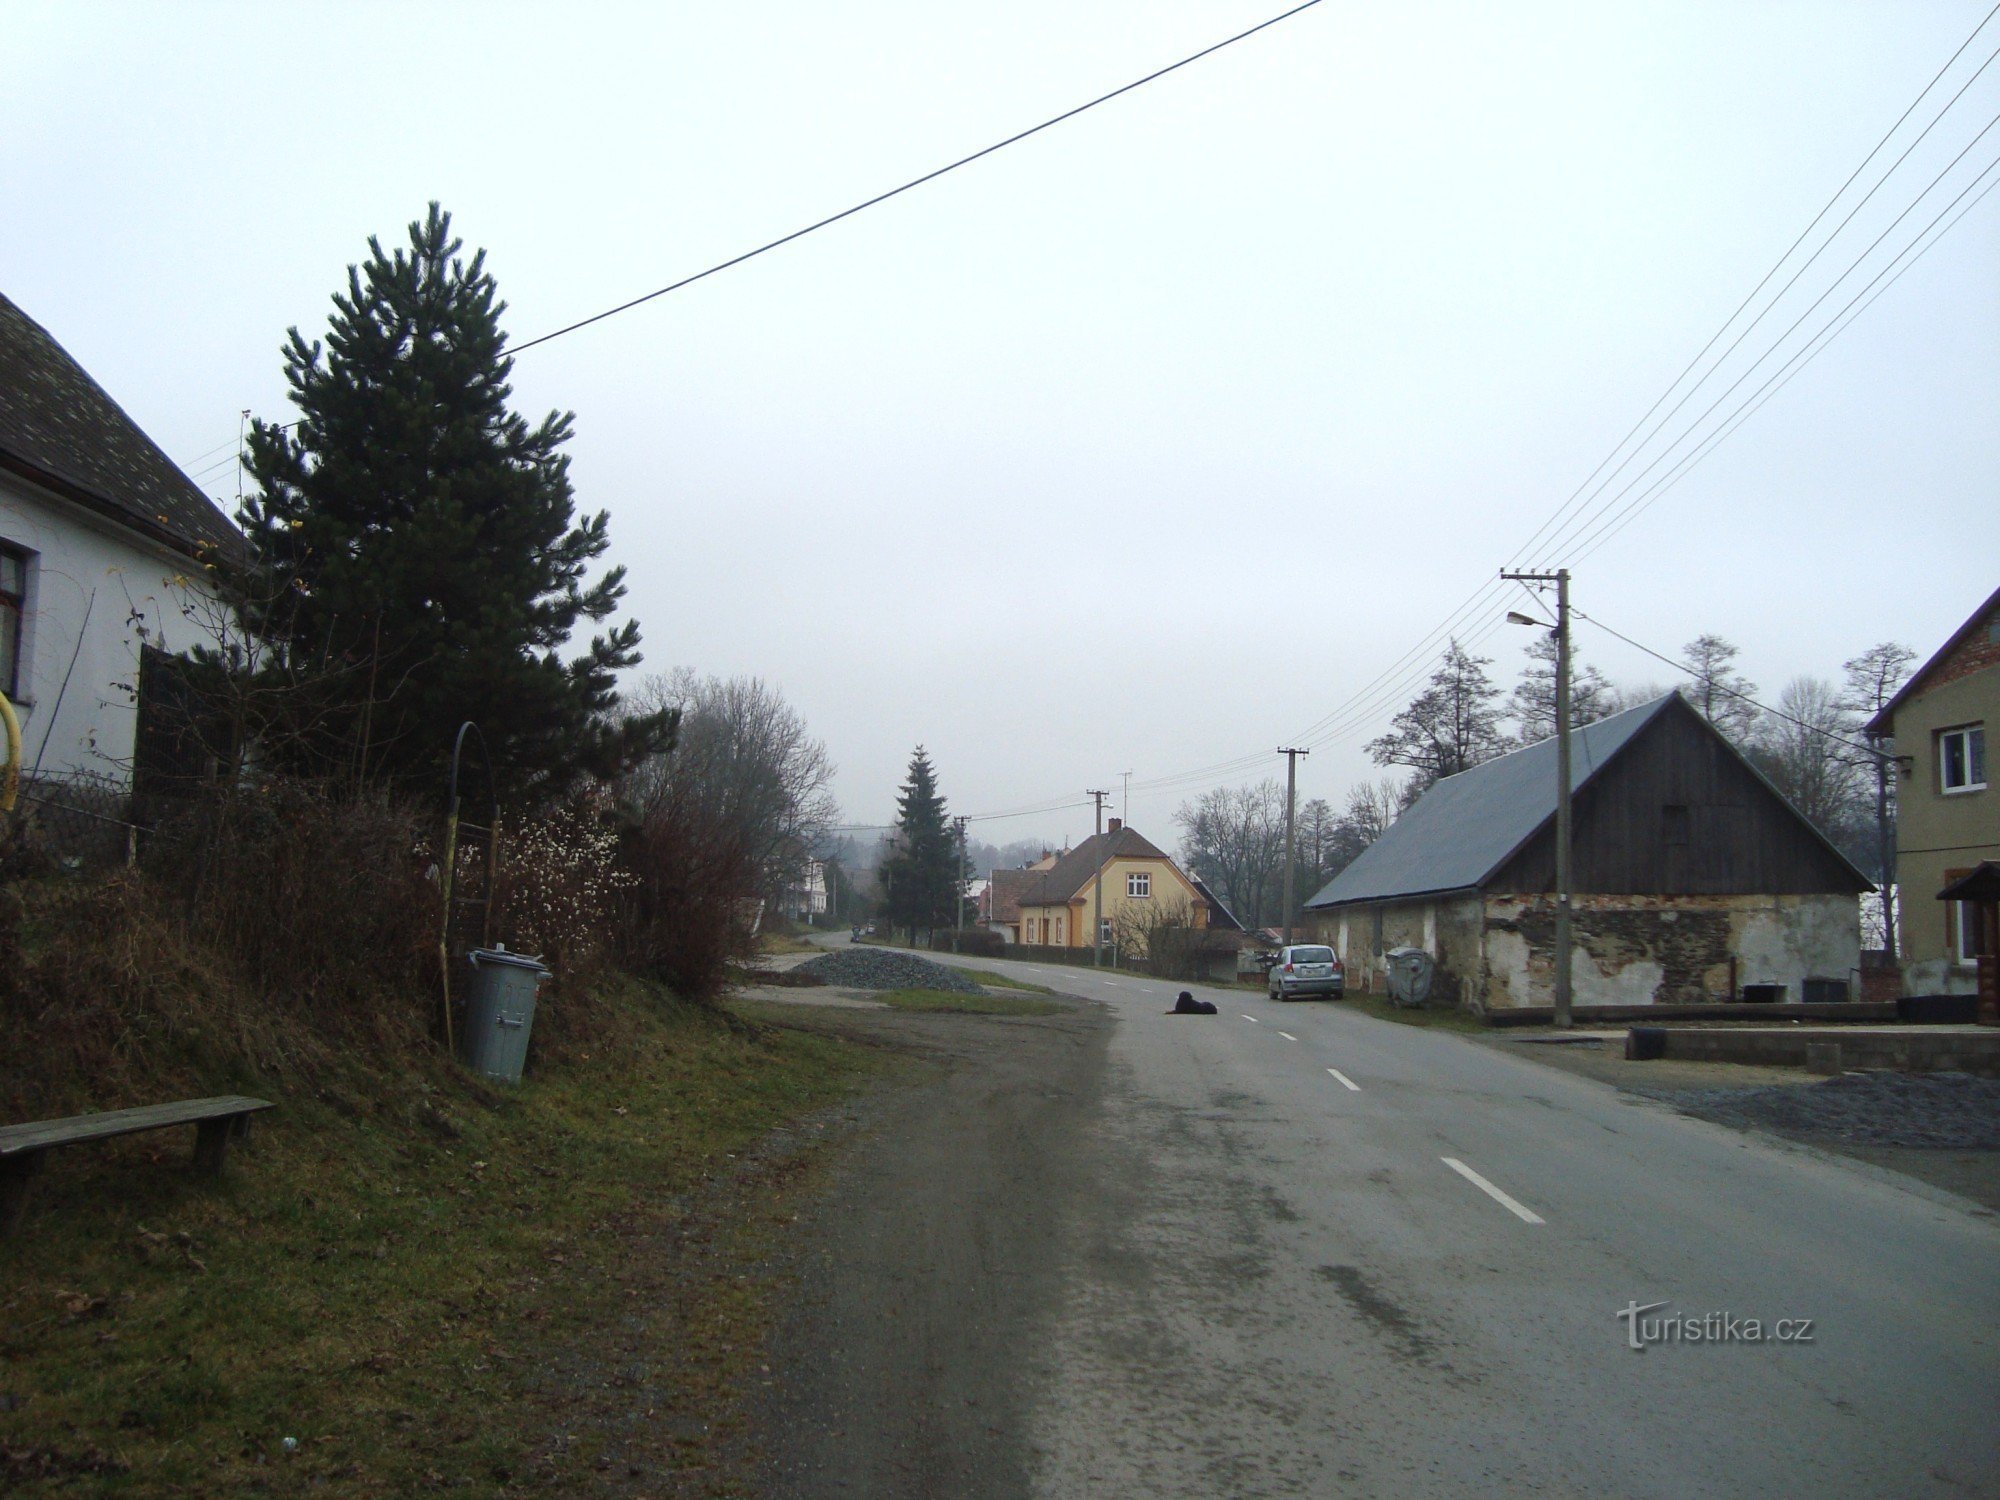 Norberčany-Stará Libavá-centro del villaggio-Foto: Ulrych Mir.